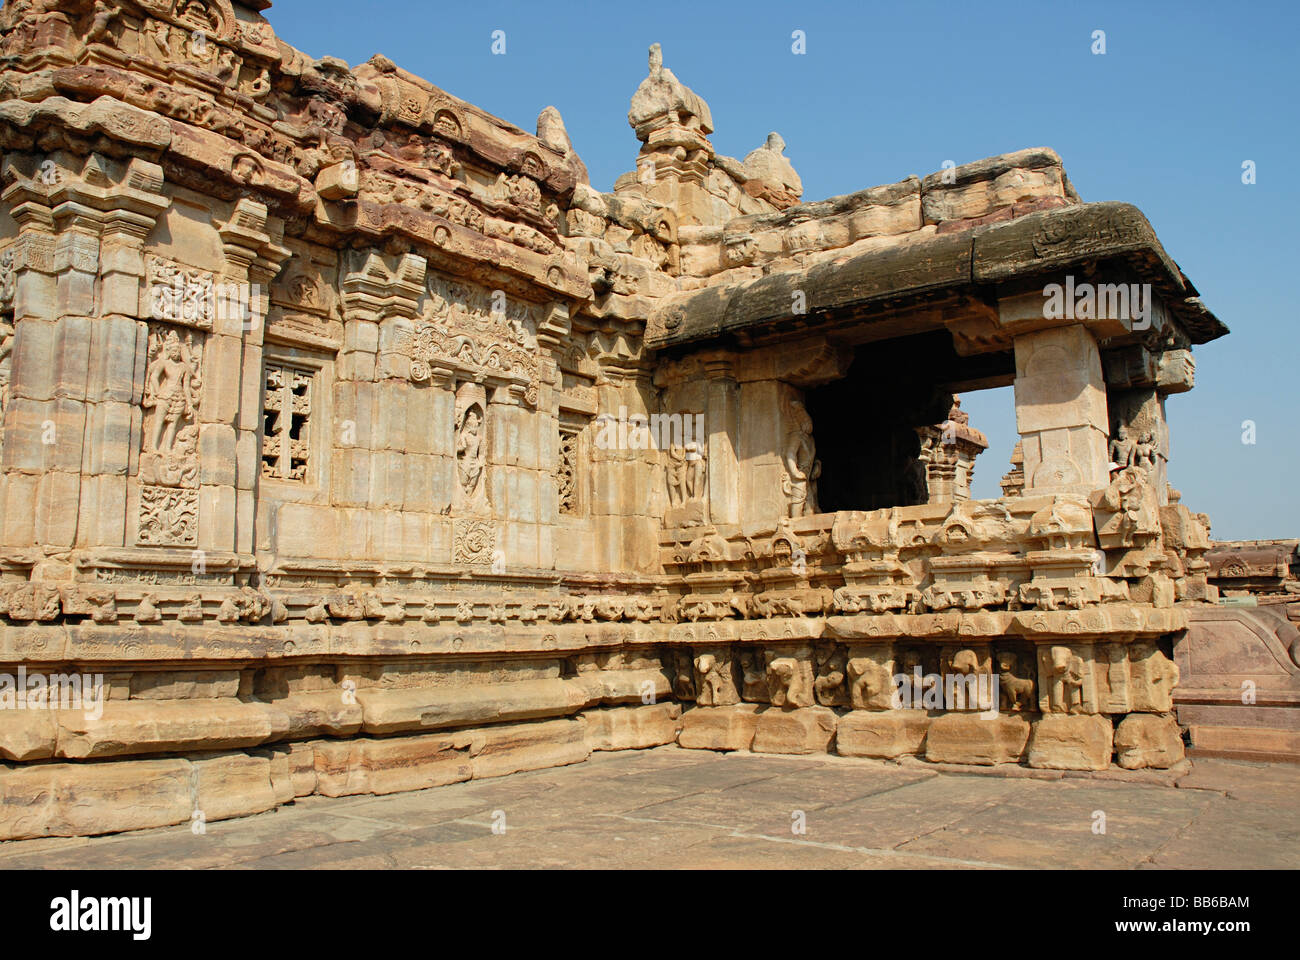 Pattadkal - Karnataka, Virupaksha temple - Nandi entrance porch, view from south-East. Stock Photo